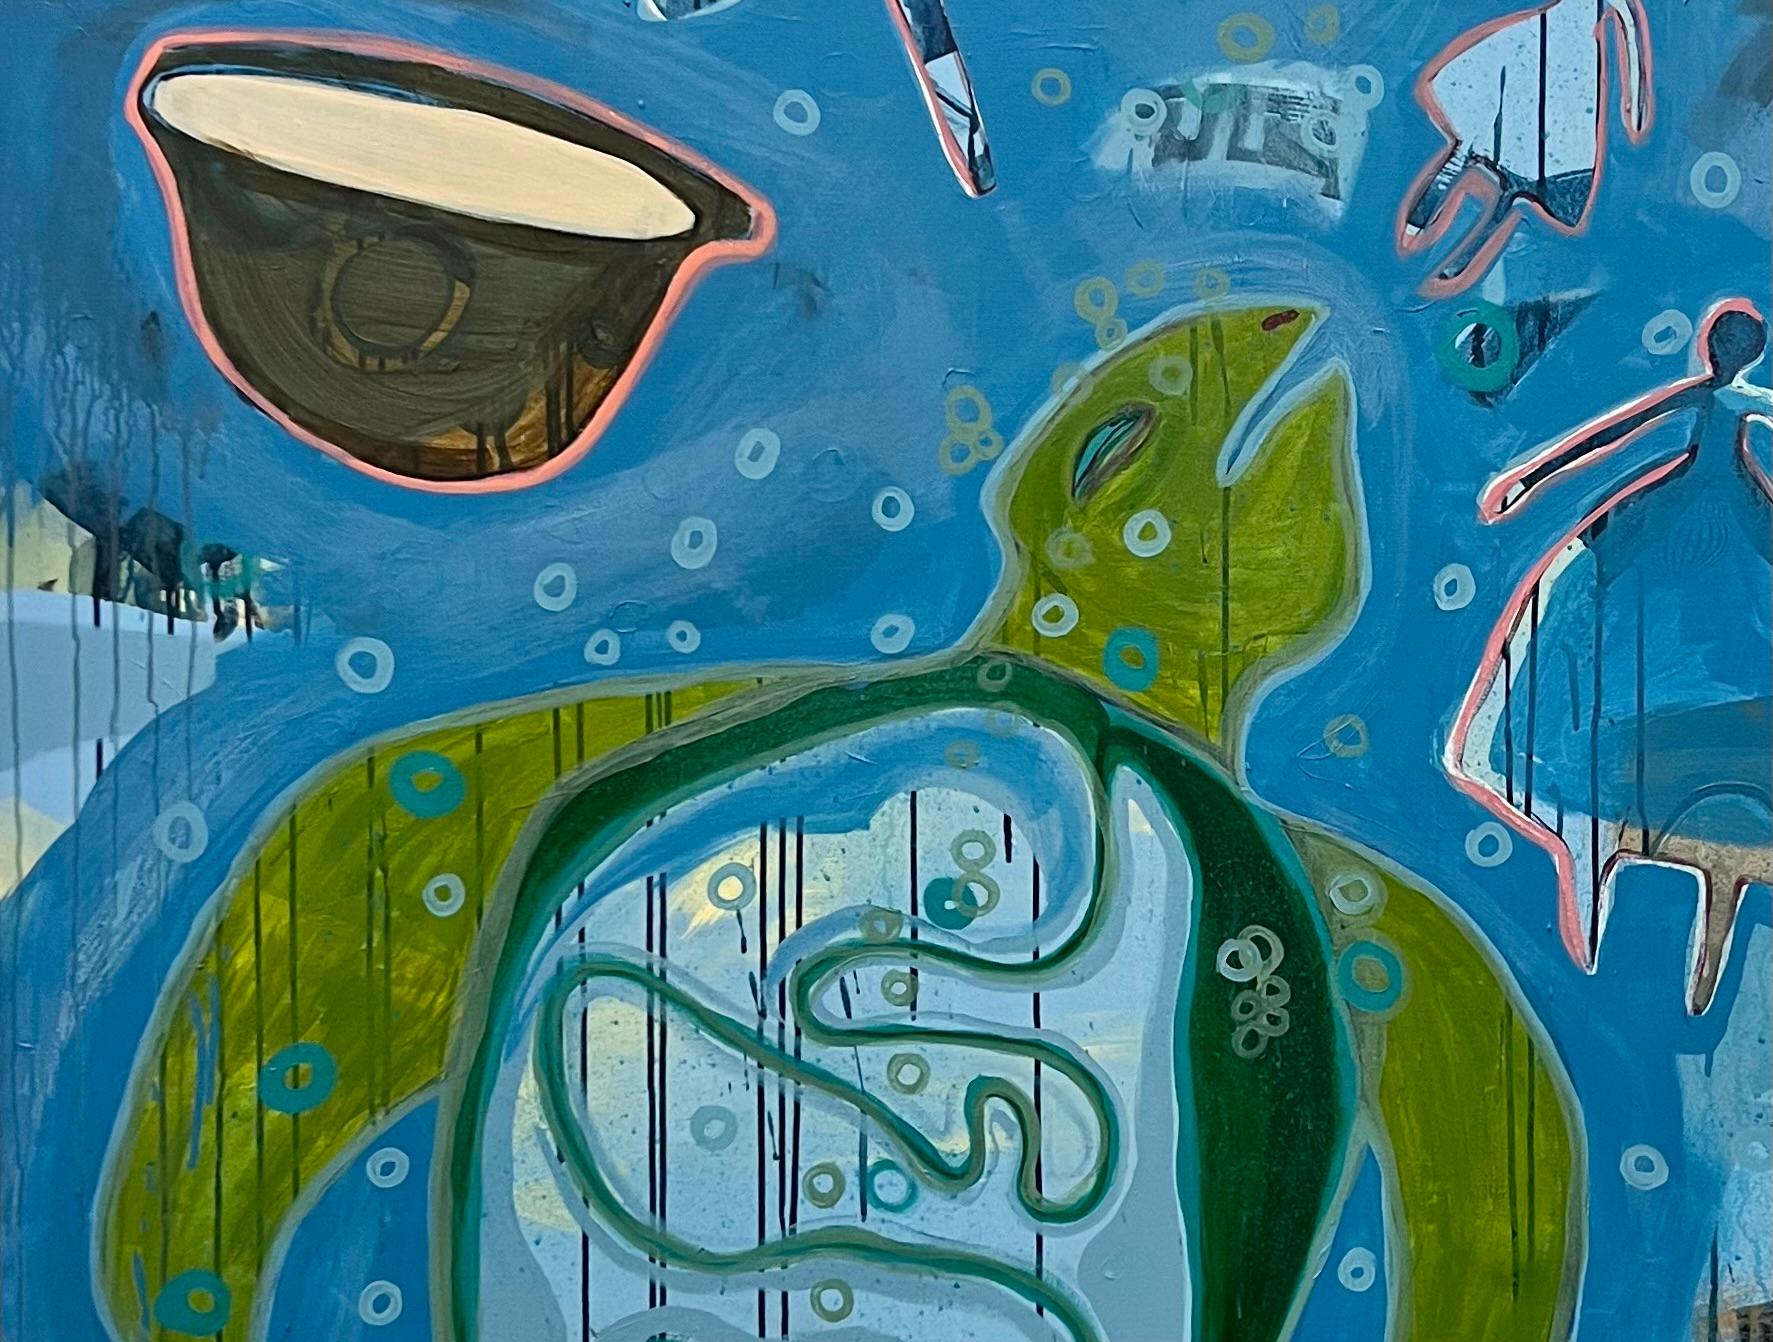 The Dream, von Melanie Yazzie, Navajo, Gemälde, vertikal, Schildkröte, Blau, Grün 1